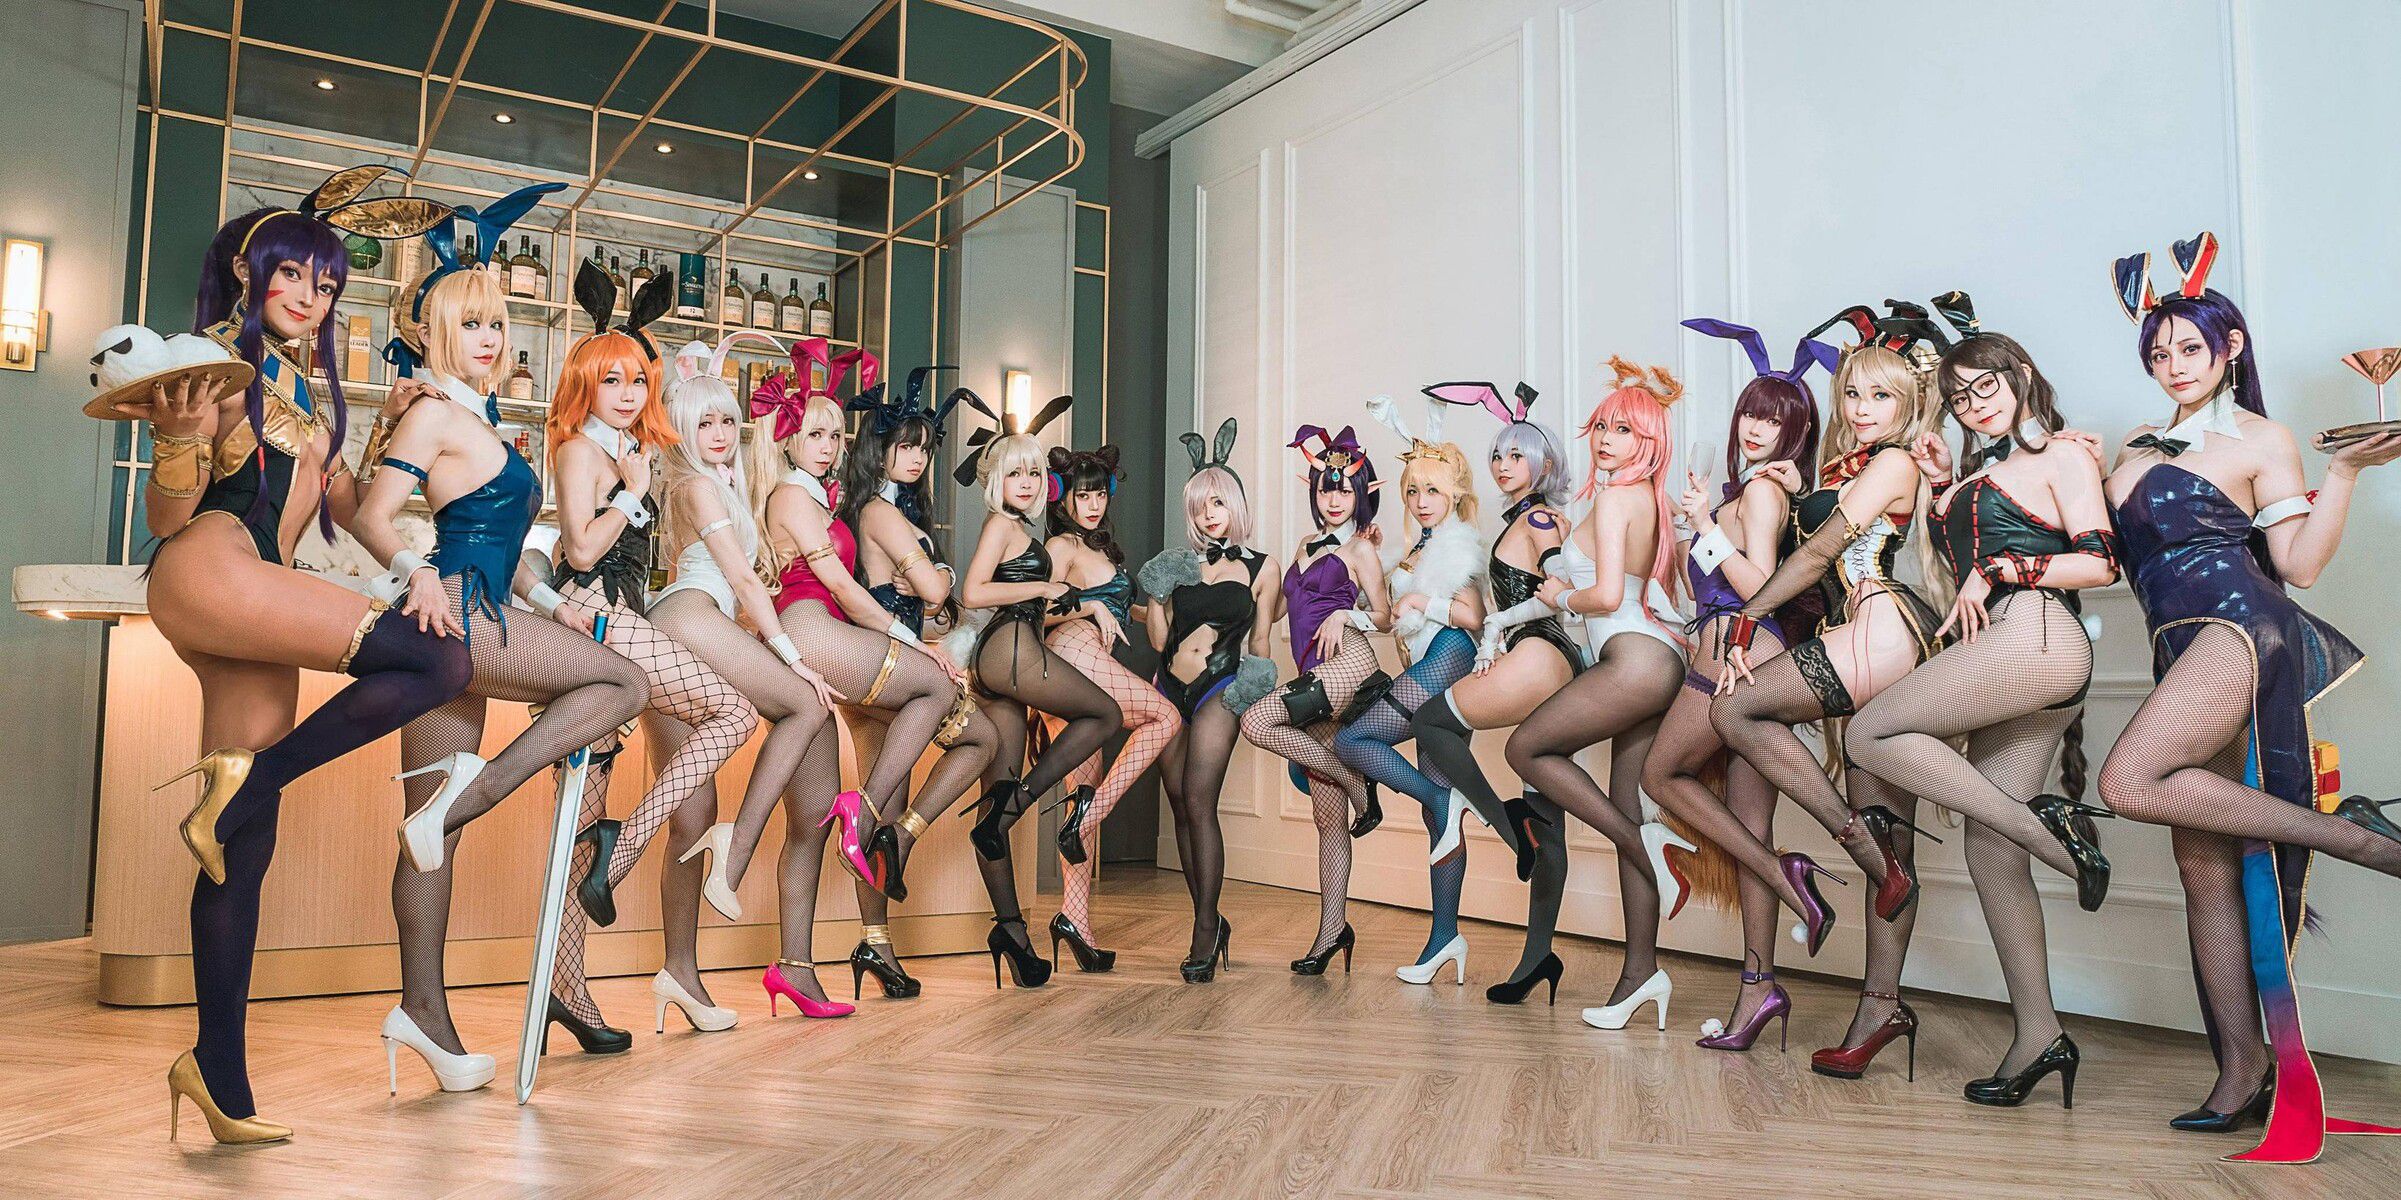 【Sad news】Female cosplayer, i'll take a group photo too echi ...w 3